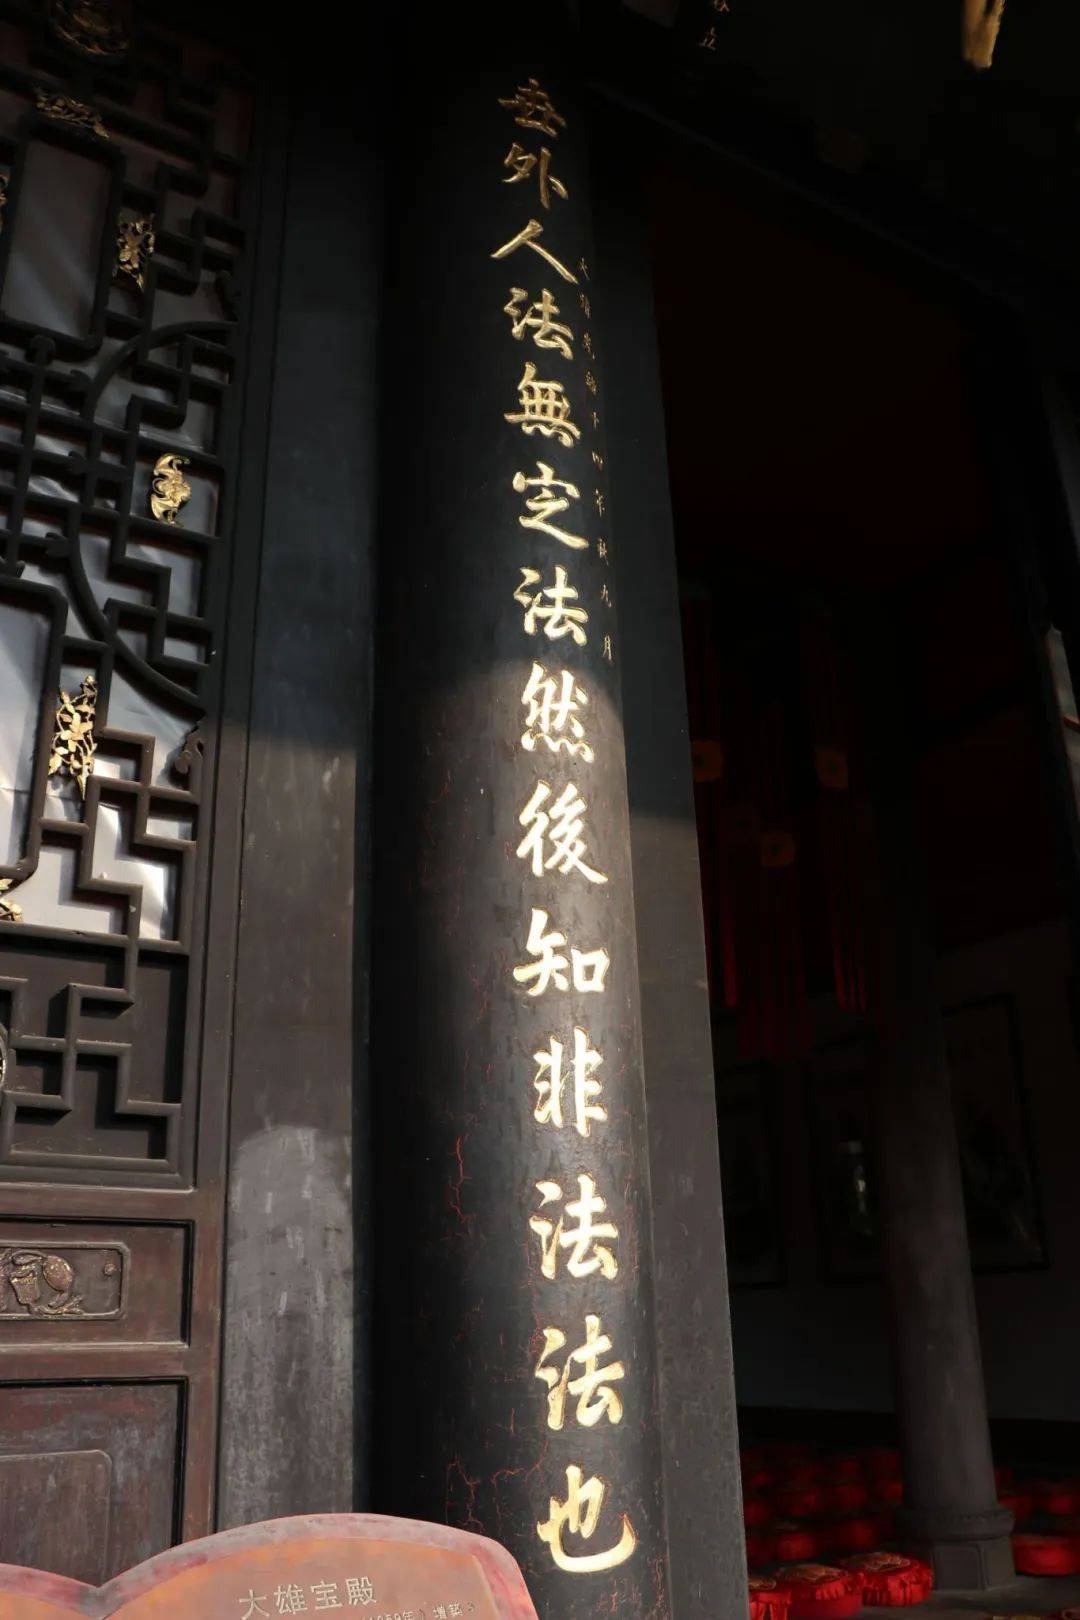 这是一副挂在新都宝光寺大雄宝殿的楹联,此联在全国寺庙联中颇有代表